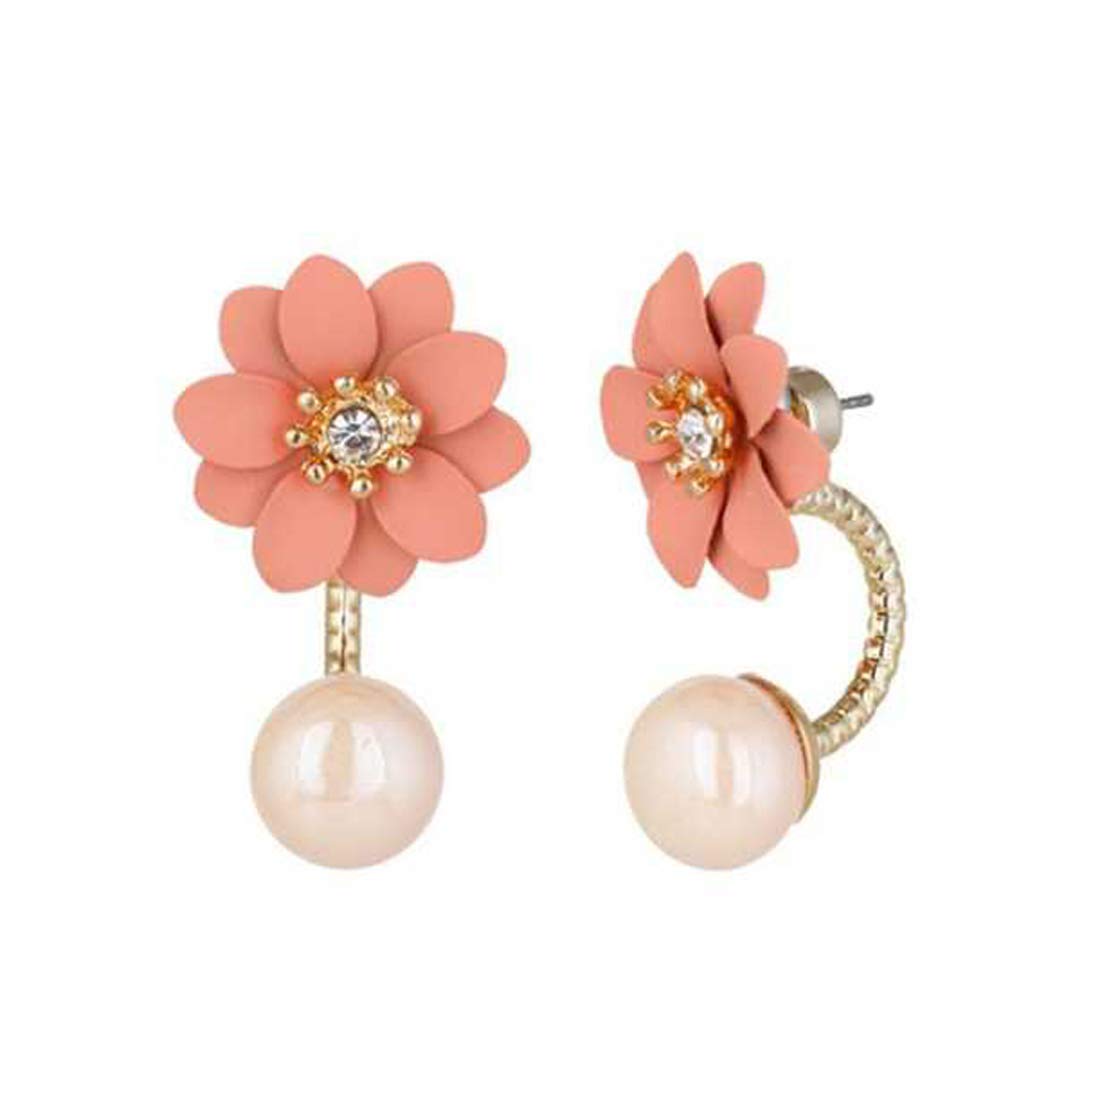 Unique latest design Pair of earrings